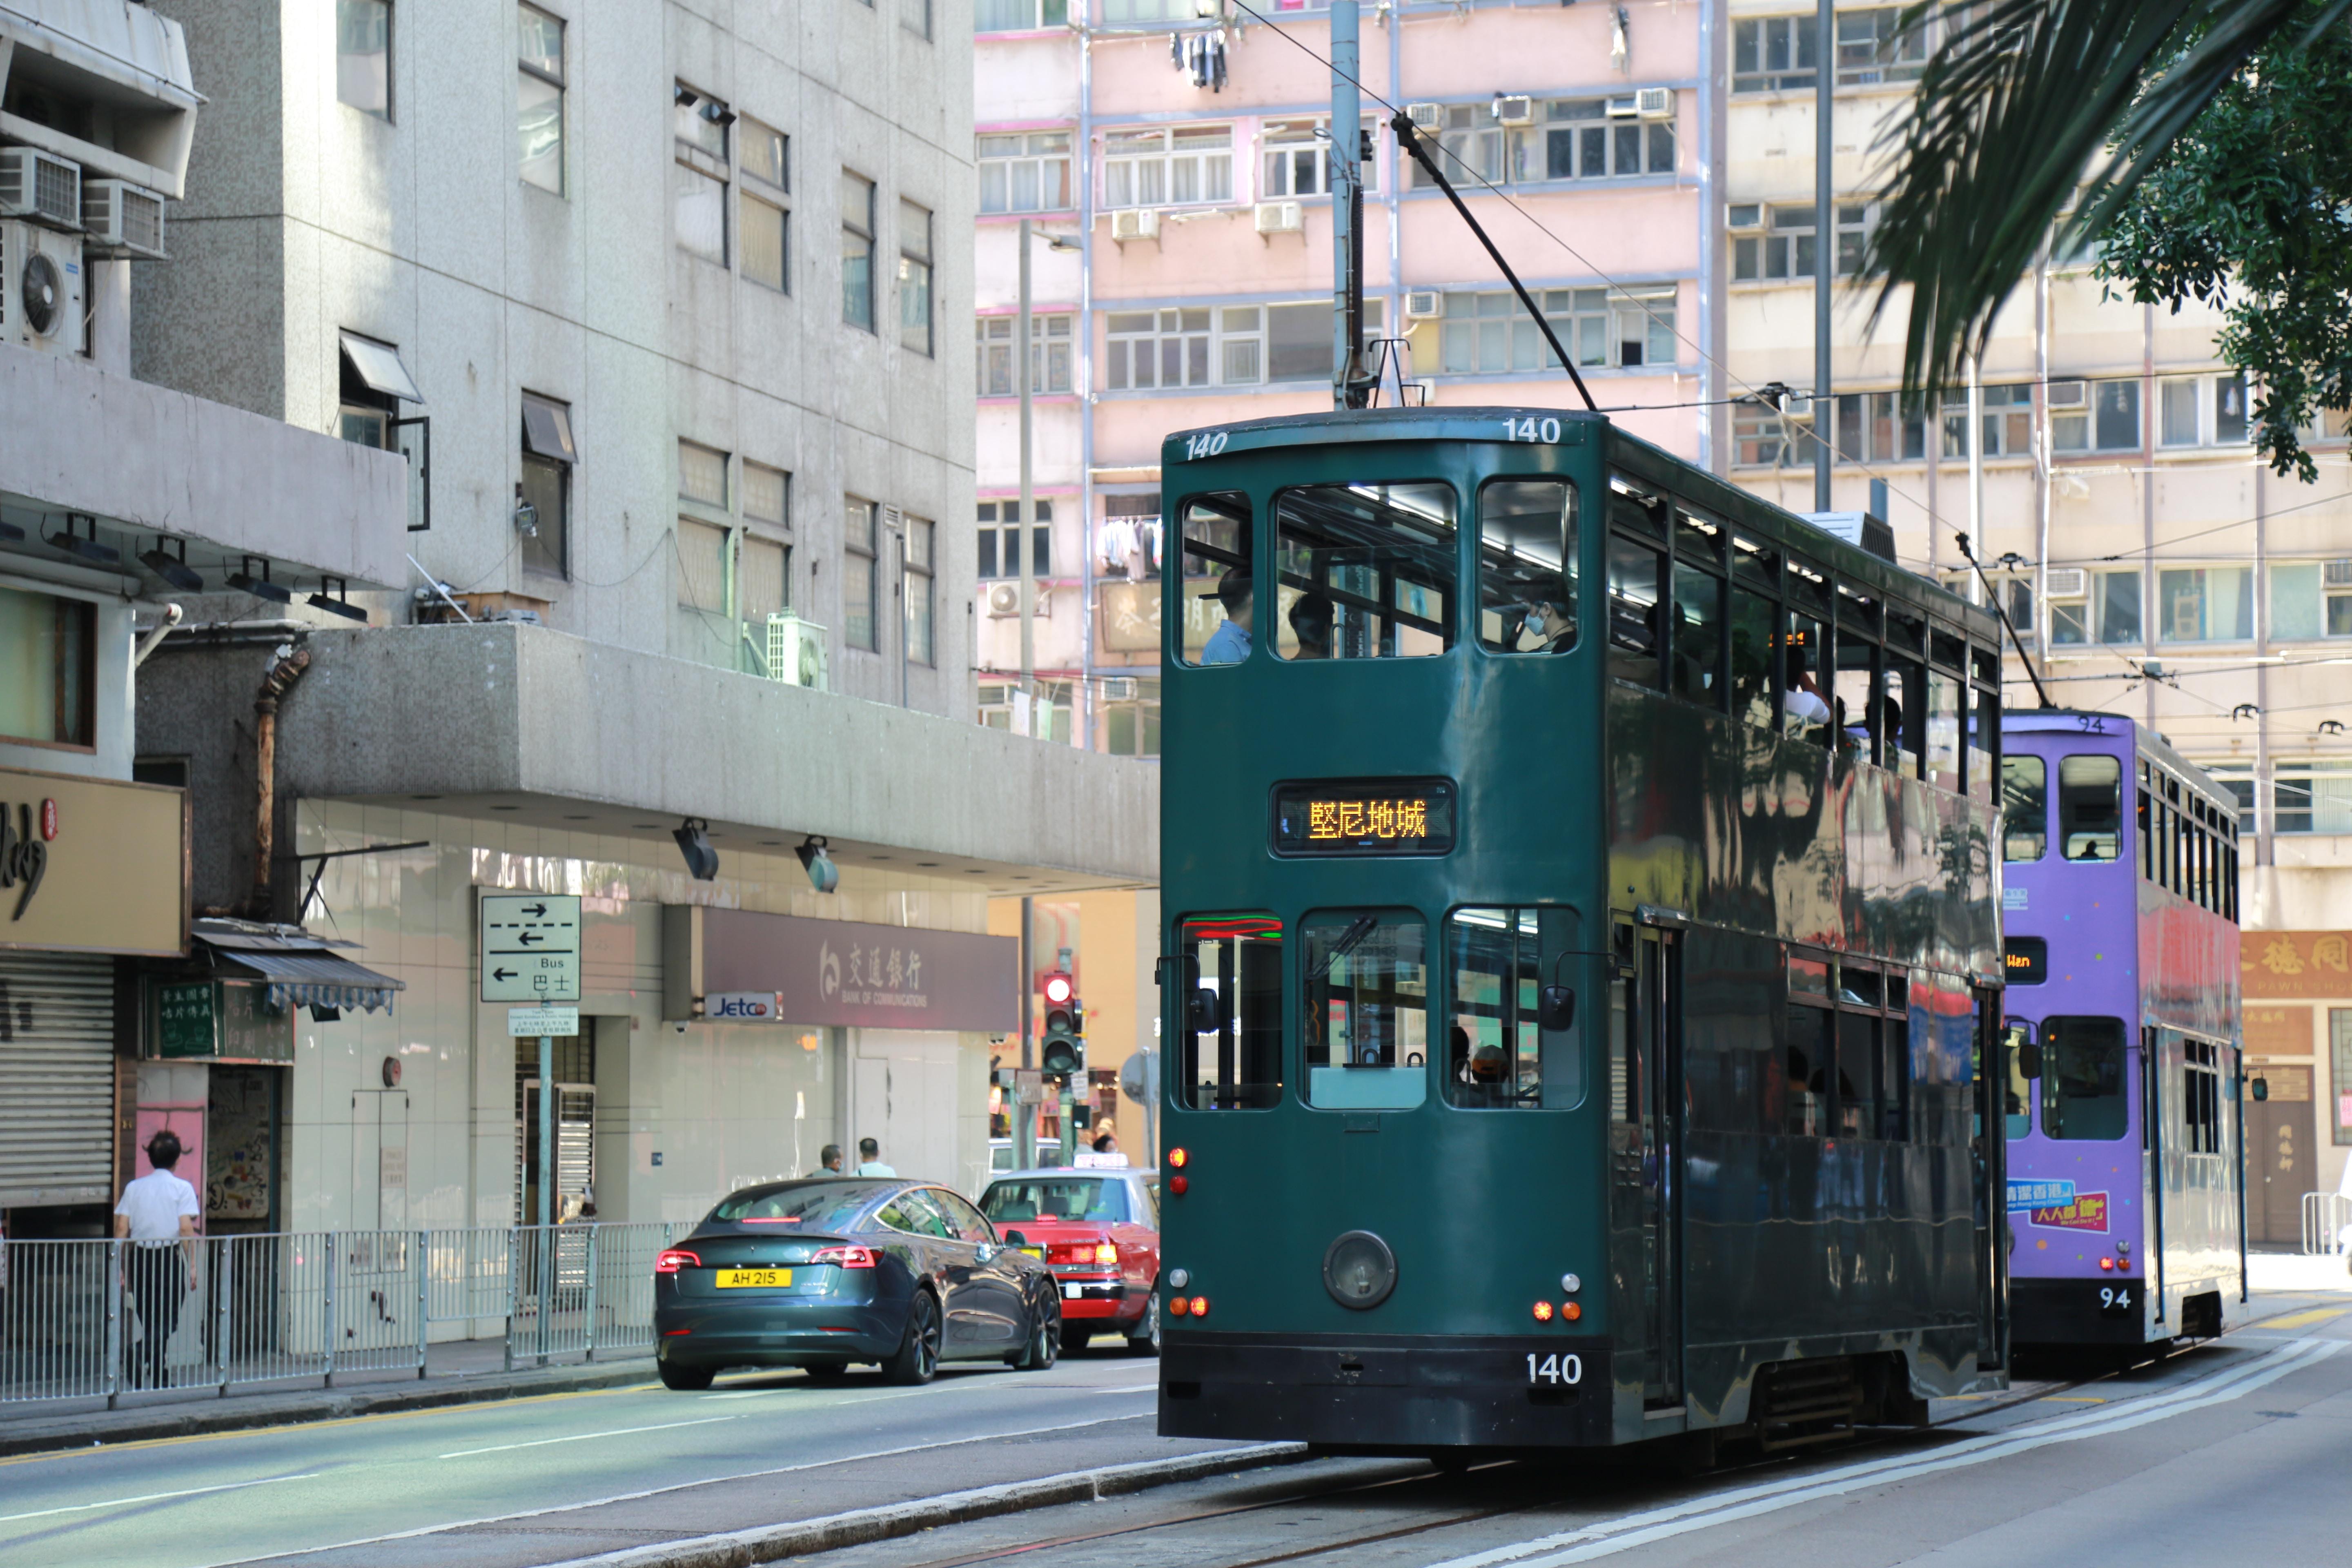 tram in Hong Kong